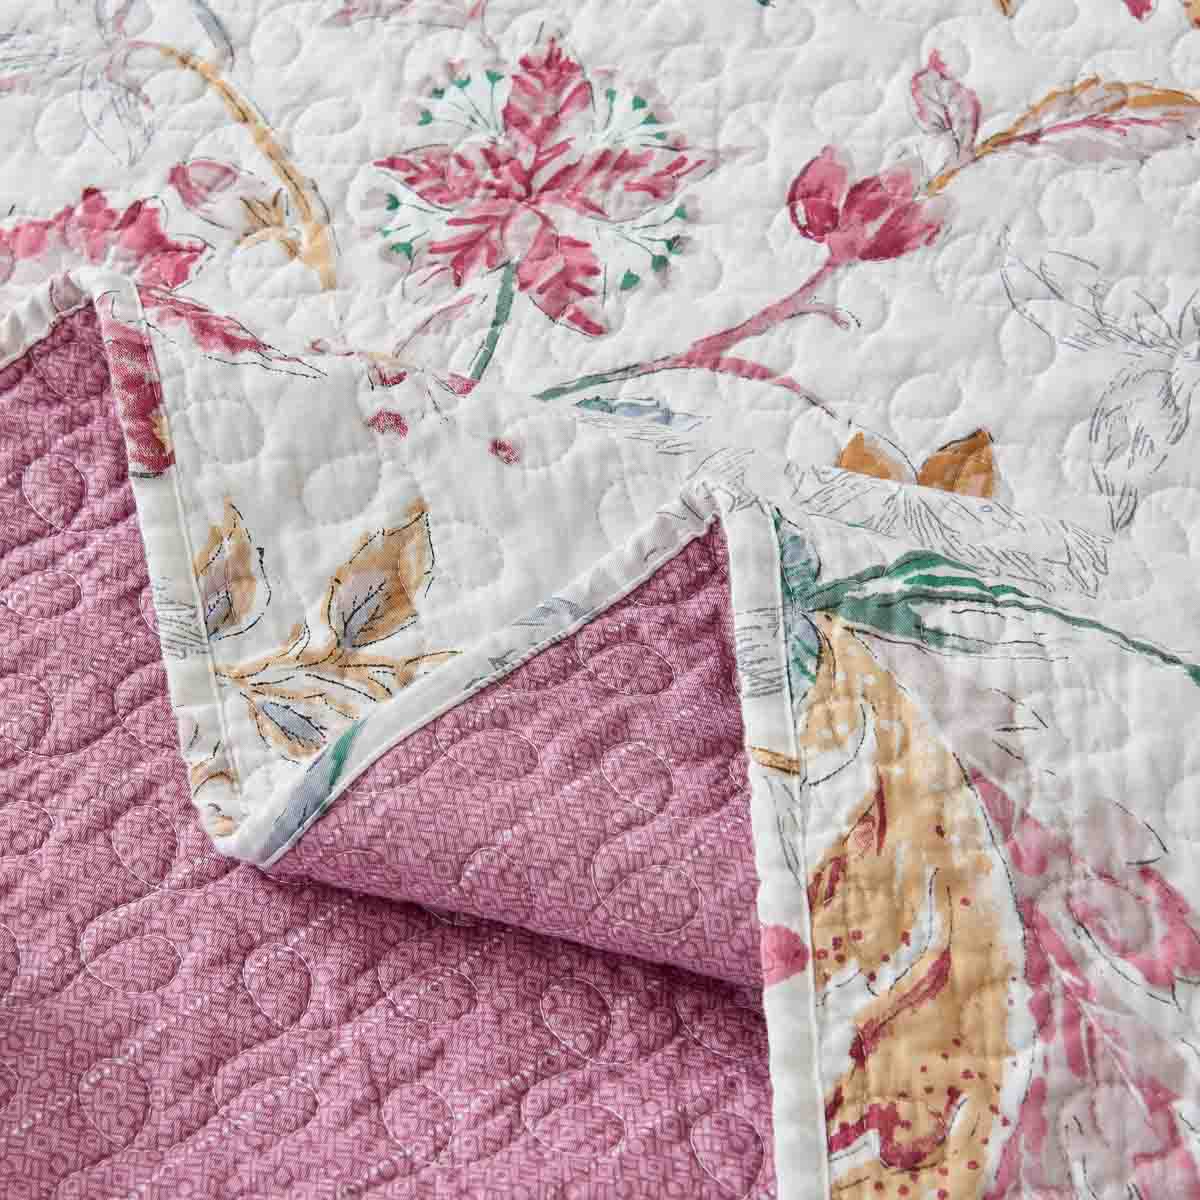 Maia Floral Cotton Quilt Set